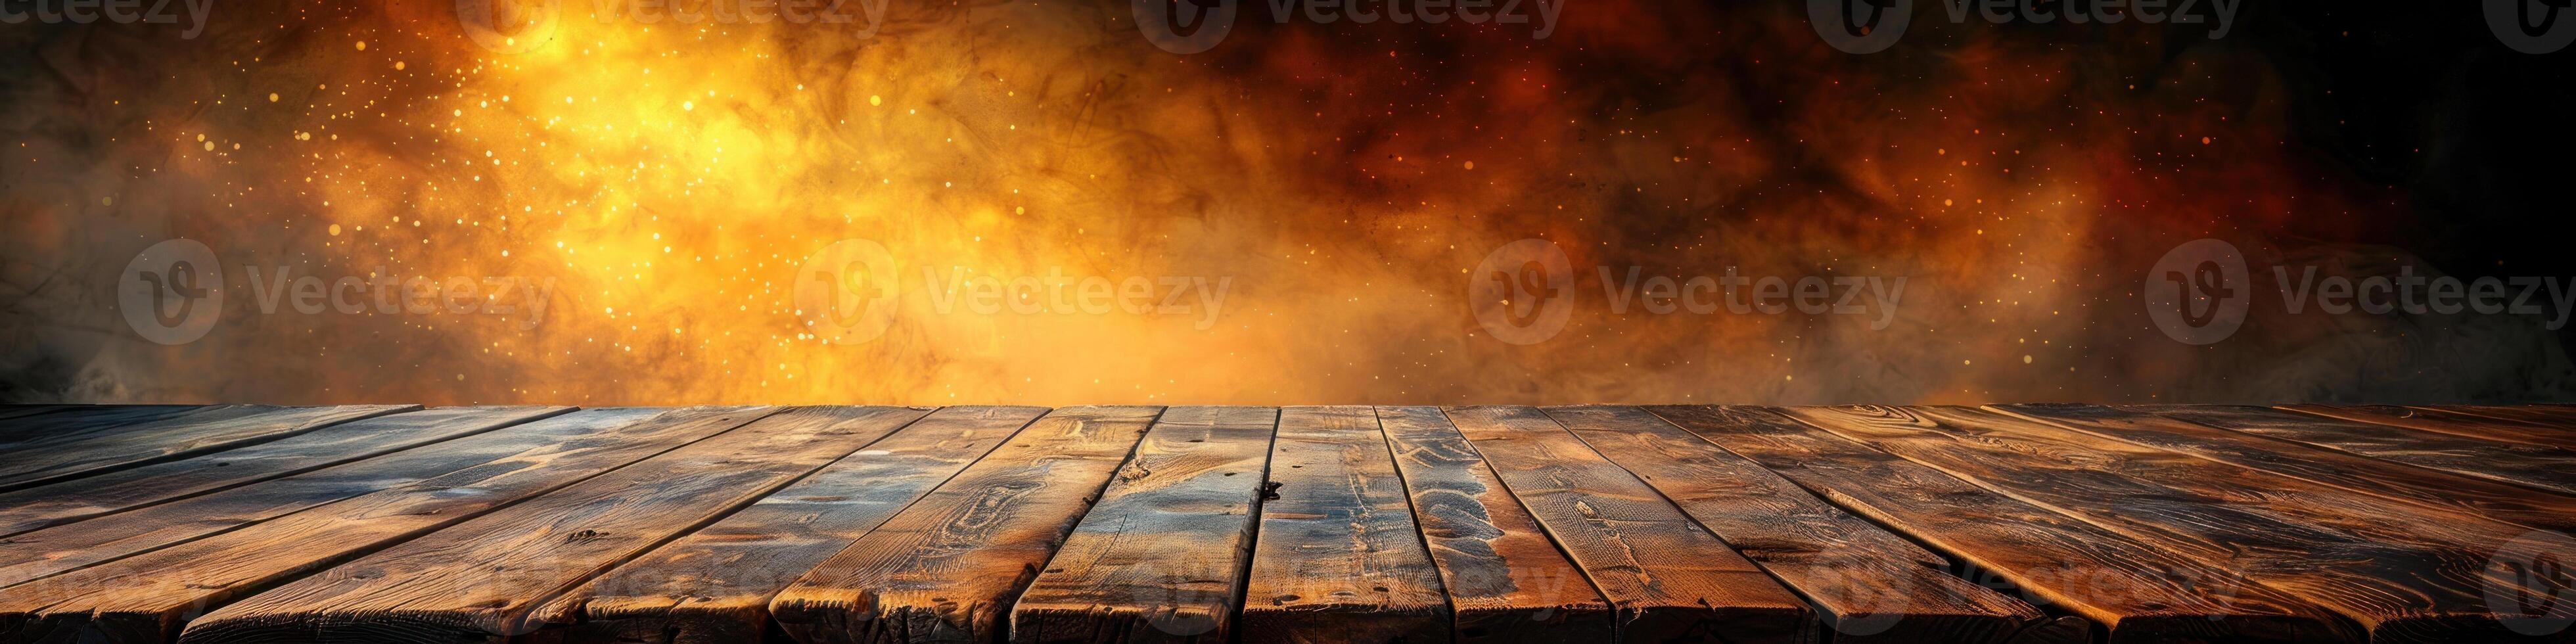 un de madera piso es envuelto en llamas y fumar, creando un peligroso y destructivo escena foto